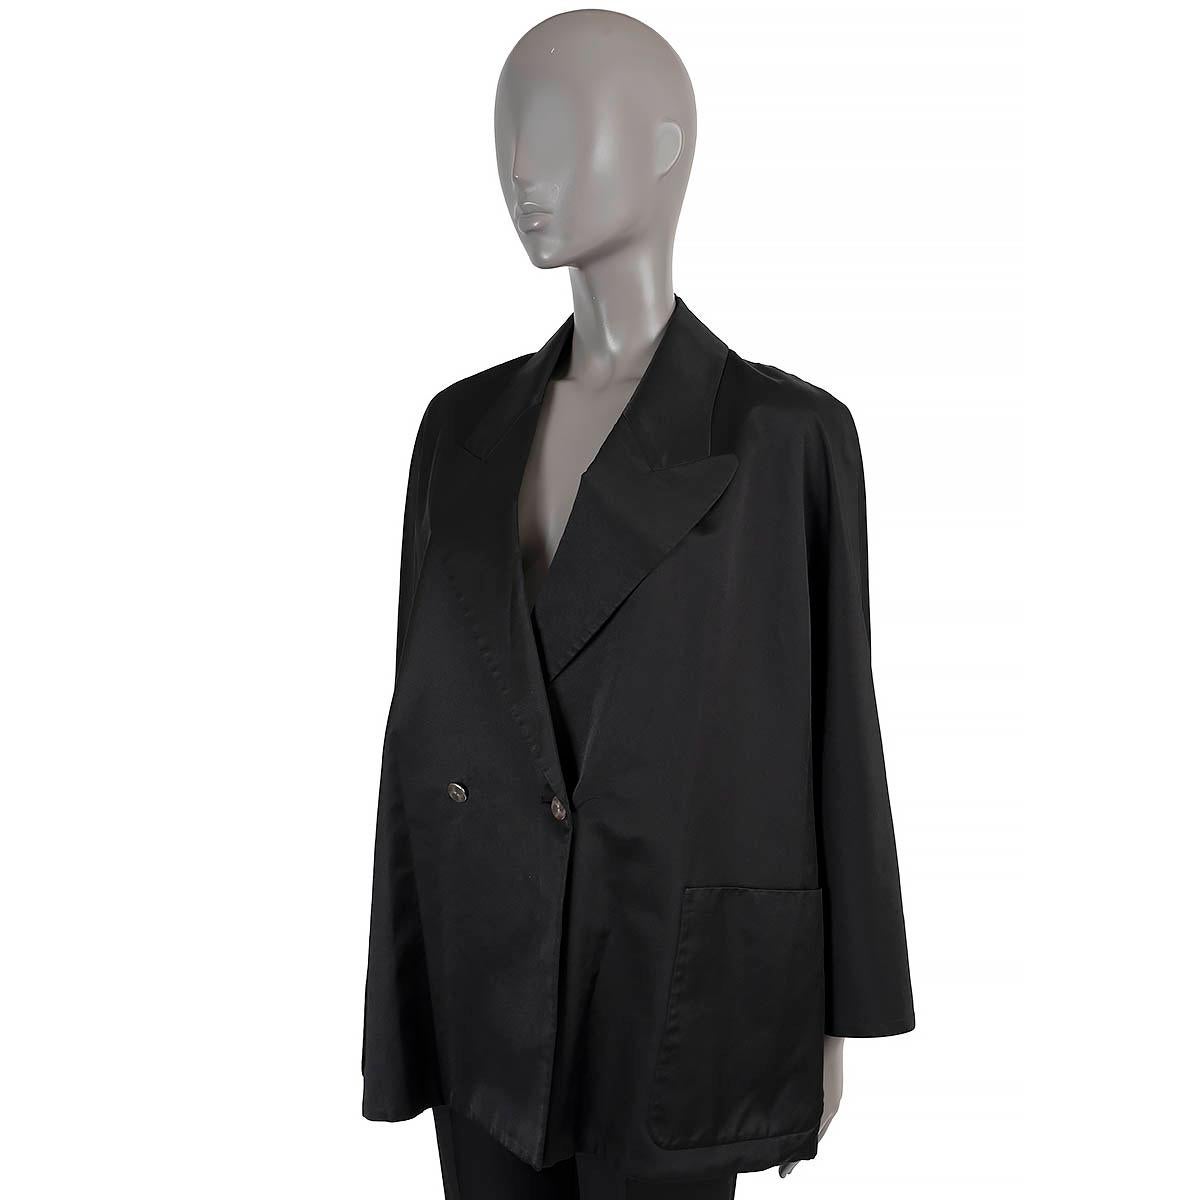 100% authentischer Hermès-Smoking-Blazer aus schwarzer Baumwolle (67%) und Seide (33%). Mit Raglanärmeln, Revers, leichter A-Linienform und zwei aufgesetzten Taschen in der Taille. Zweireihig mit silberfarbenem Metallknopfverschluss. Wurde getragen